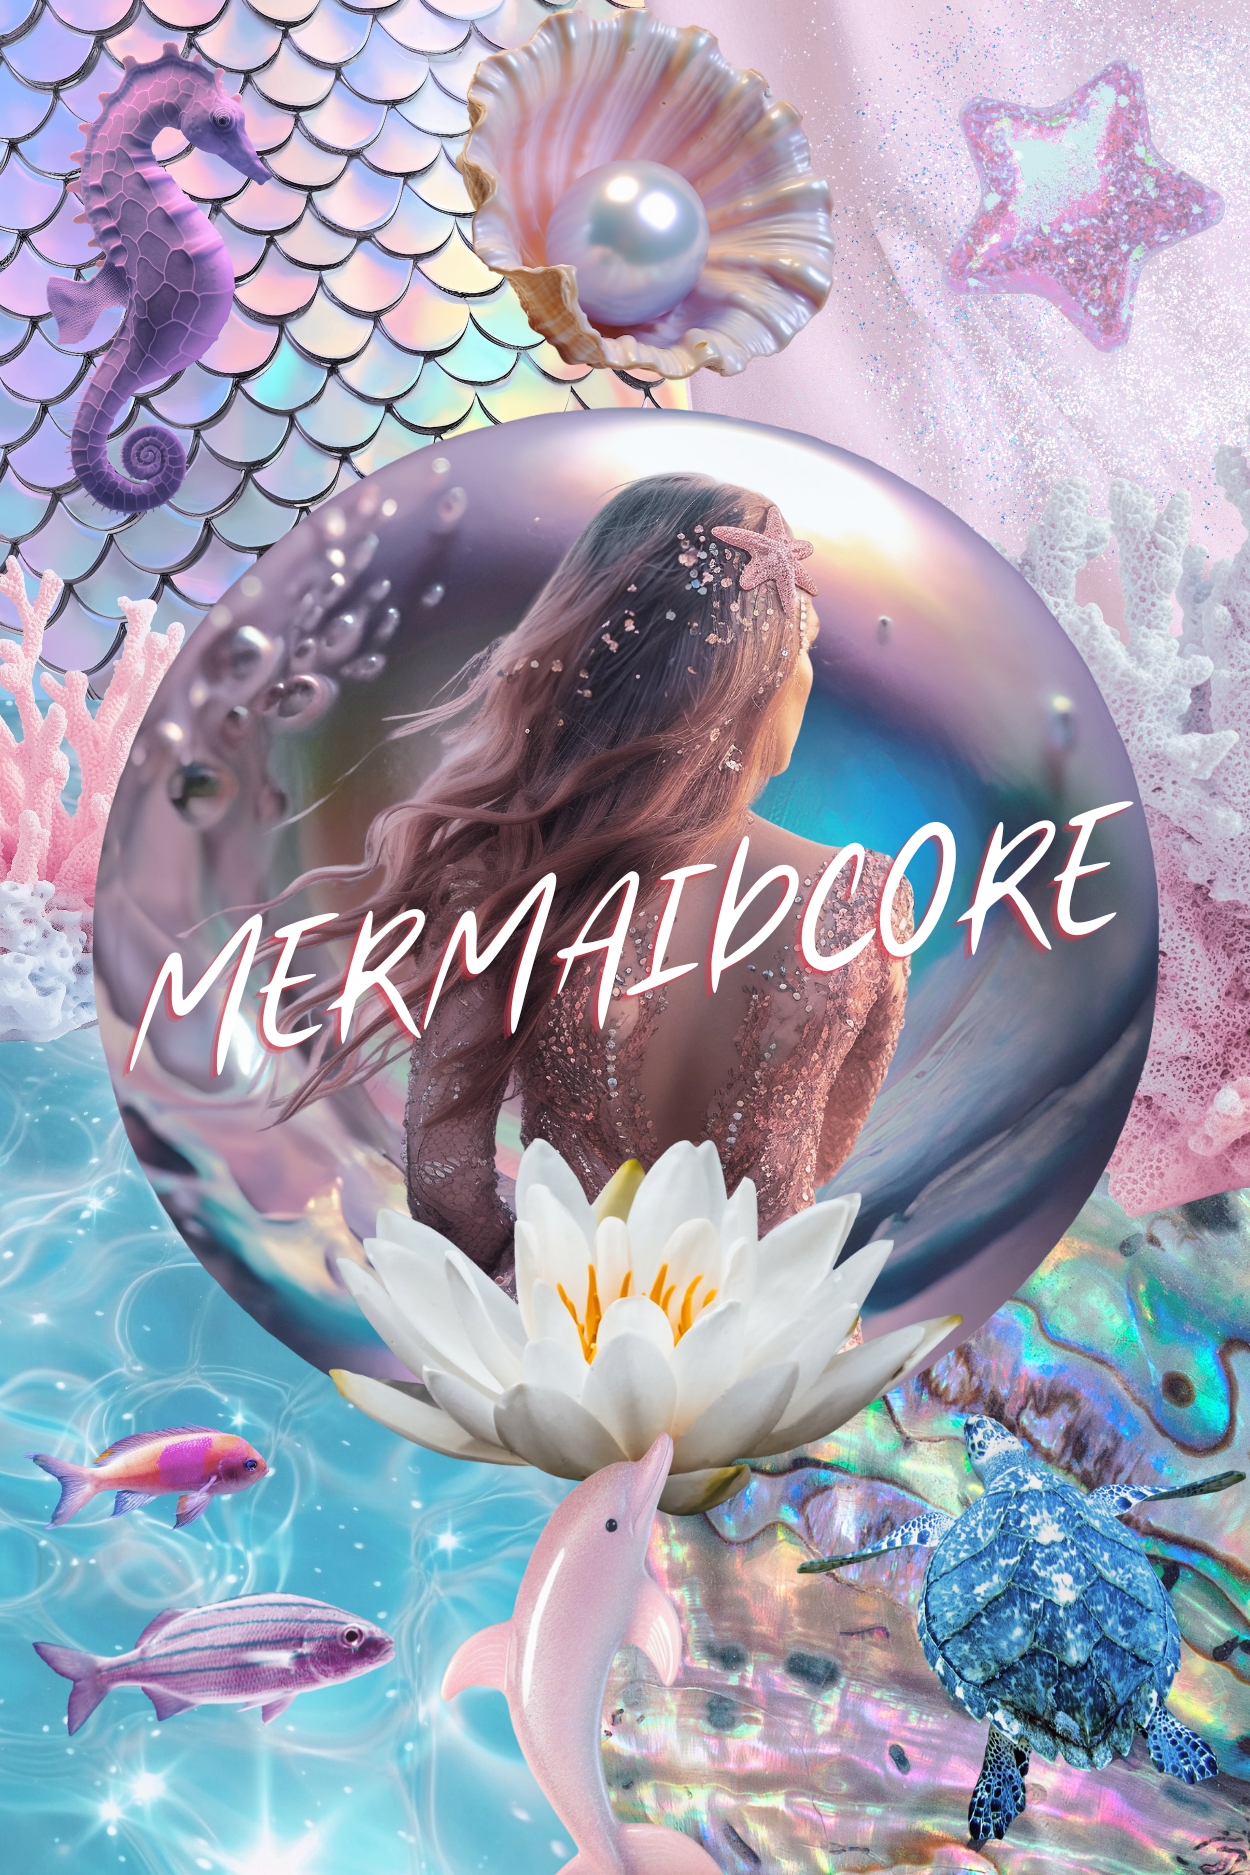 What Is Mermaid Core?